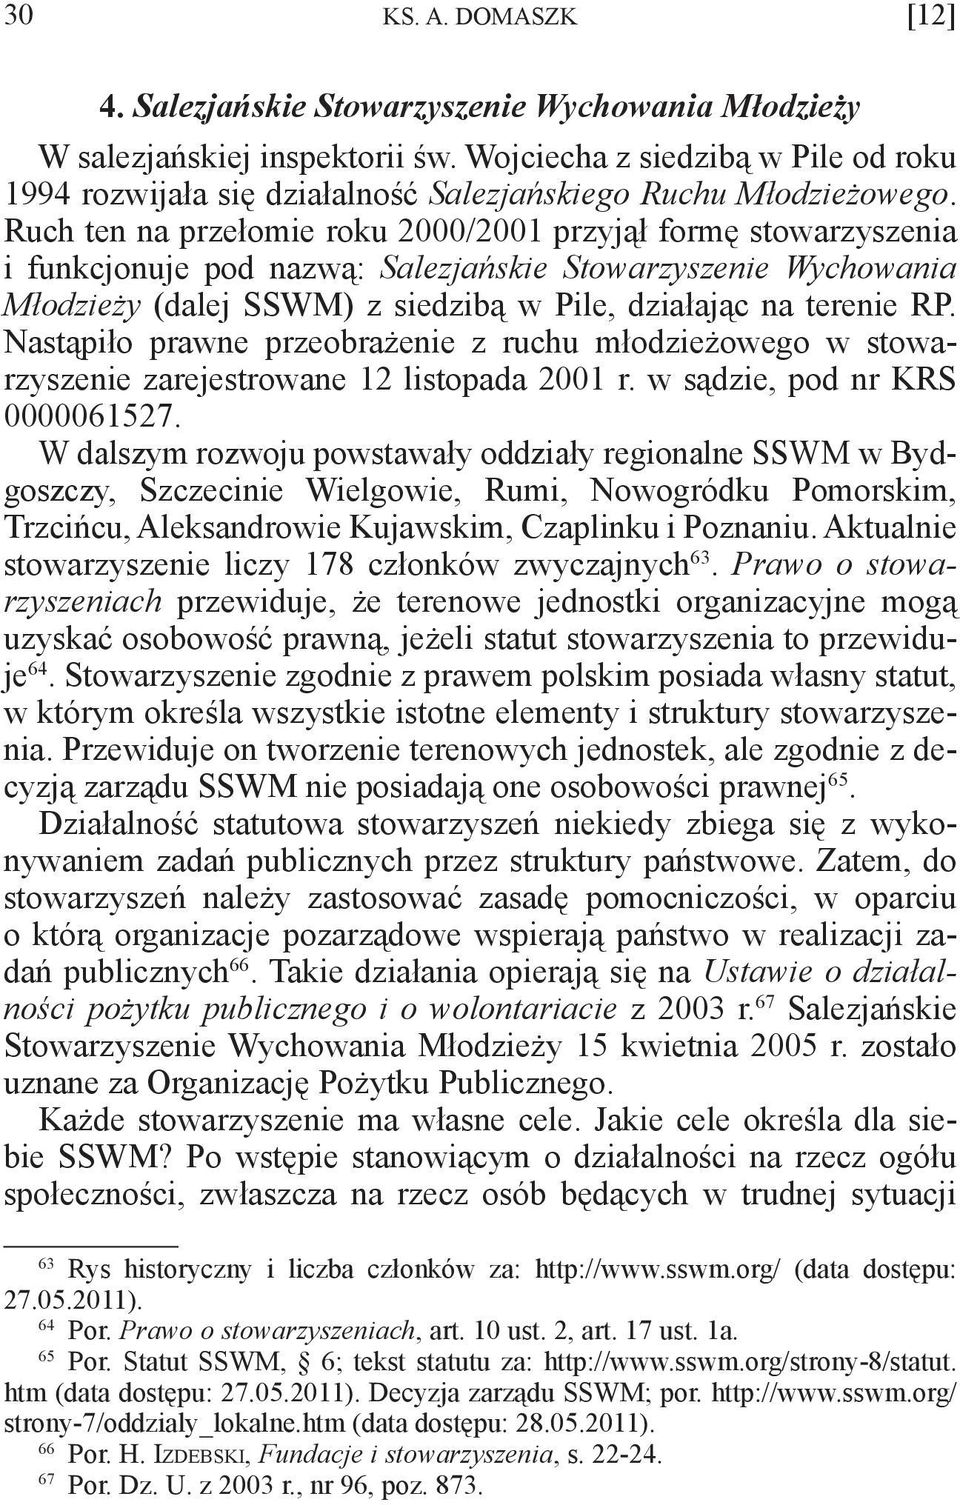 Ruch ten na przełomie roku 2000/2001 przyjął formę stowarzyszenia i funkcjonuje pod nazwą: Salezjańskie Stowarzyszenie Wychowania Młodzieży (dalej SSWM) z siedzibą w Pile, działając na terenie RP.